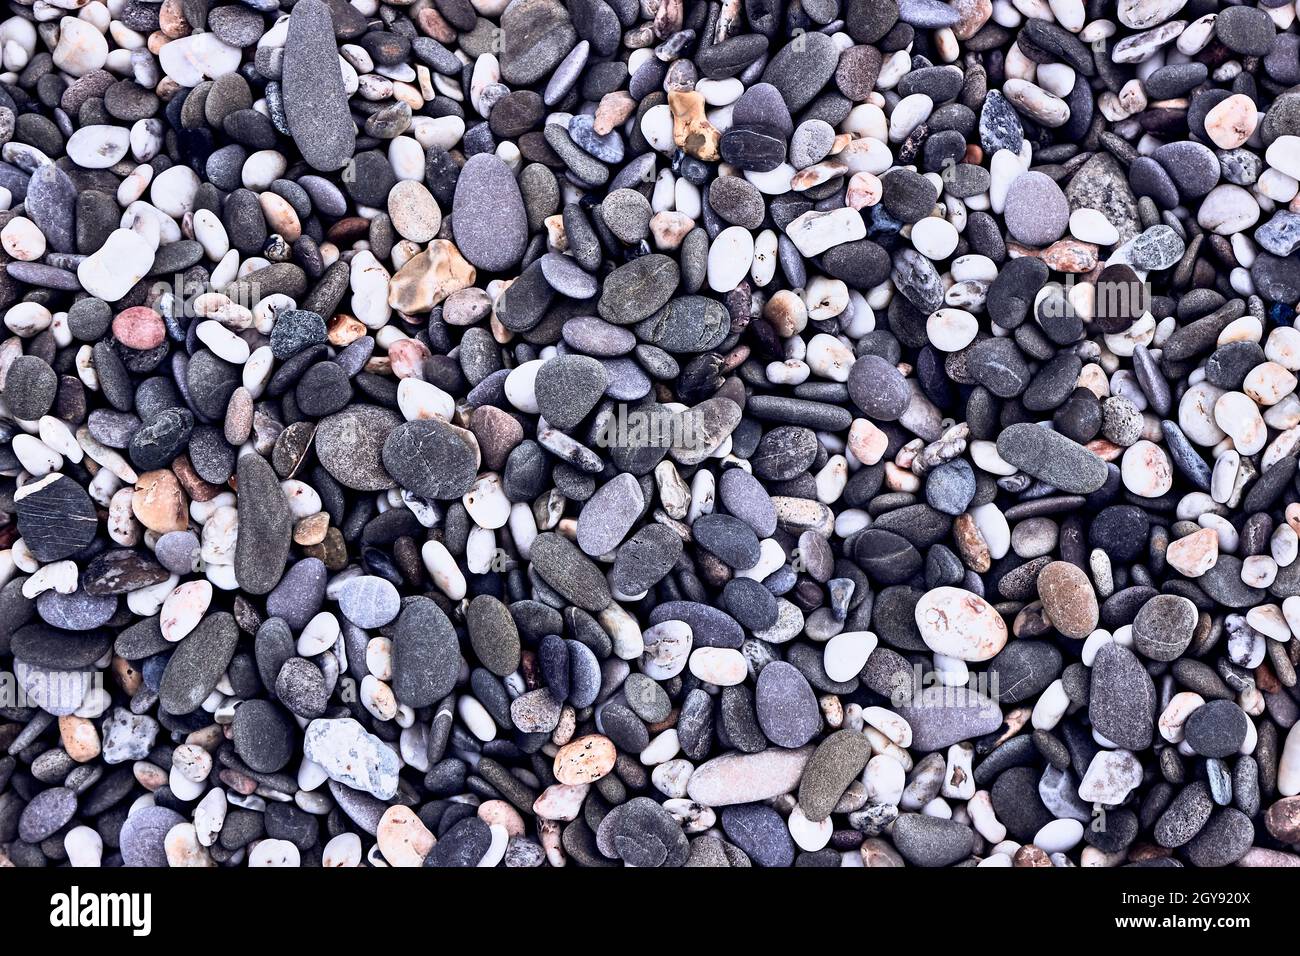 Hintergrund aus Kieselsteinen, Blick von oben. Die Textur von Meeressteinen. Grau-lila, weiße, gelbe Steine auf dem Meer. Natürliche Materialien und Farben aus Stein. Stockfoto